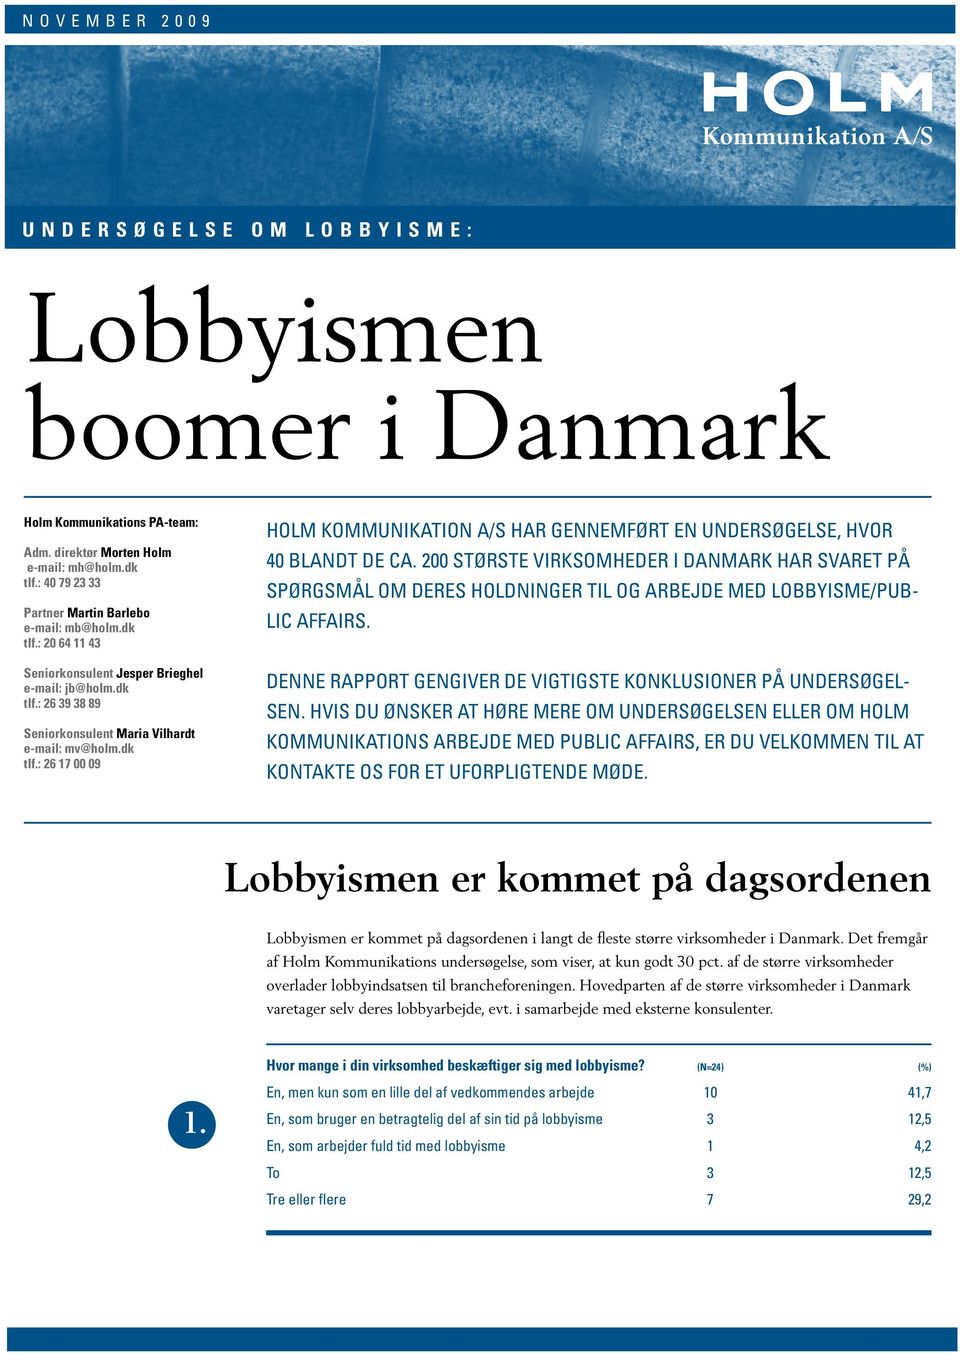 200 største virksomheder i Danmark har svaret på spørgsmål om deres holdninger til og arbejde med lobbyisme/public affairs. Denne rapport gengiver de vigtigste konklusioner på undersøgelsen.